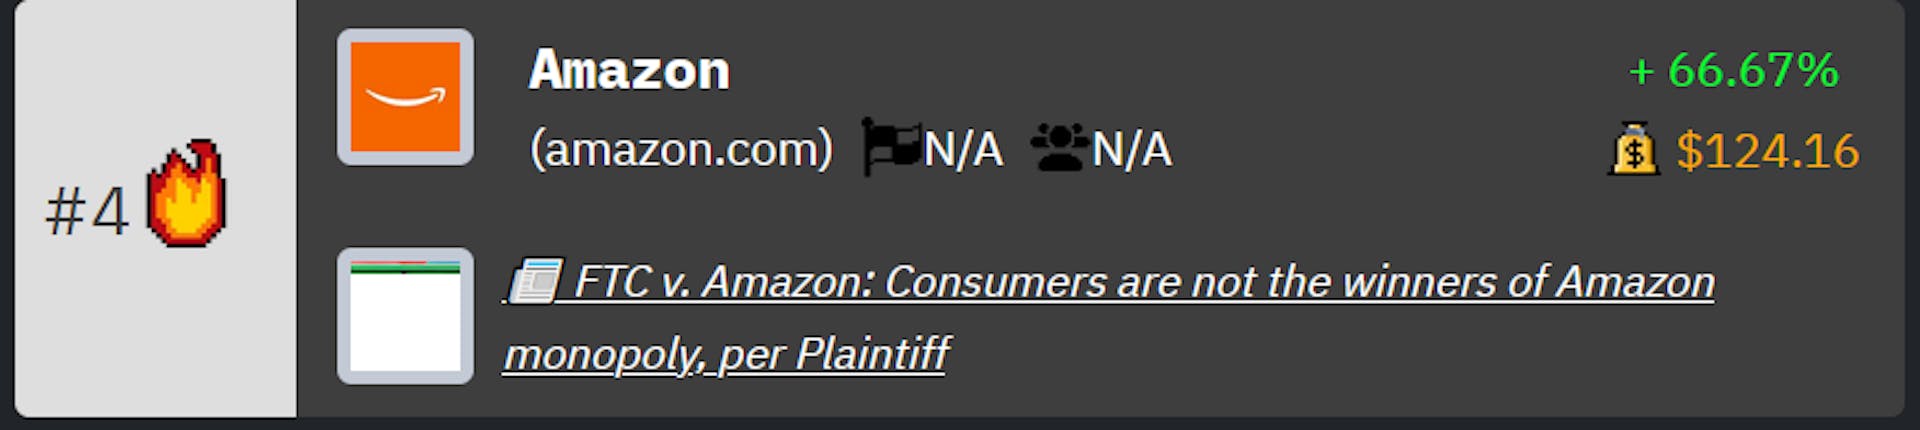 亚马逊在 HackerNoon 科技公司排名中排名